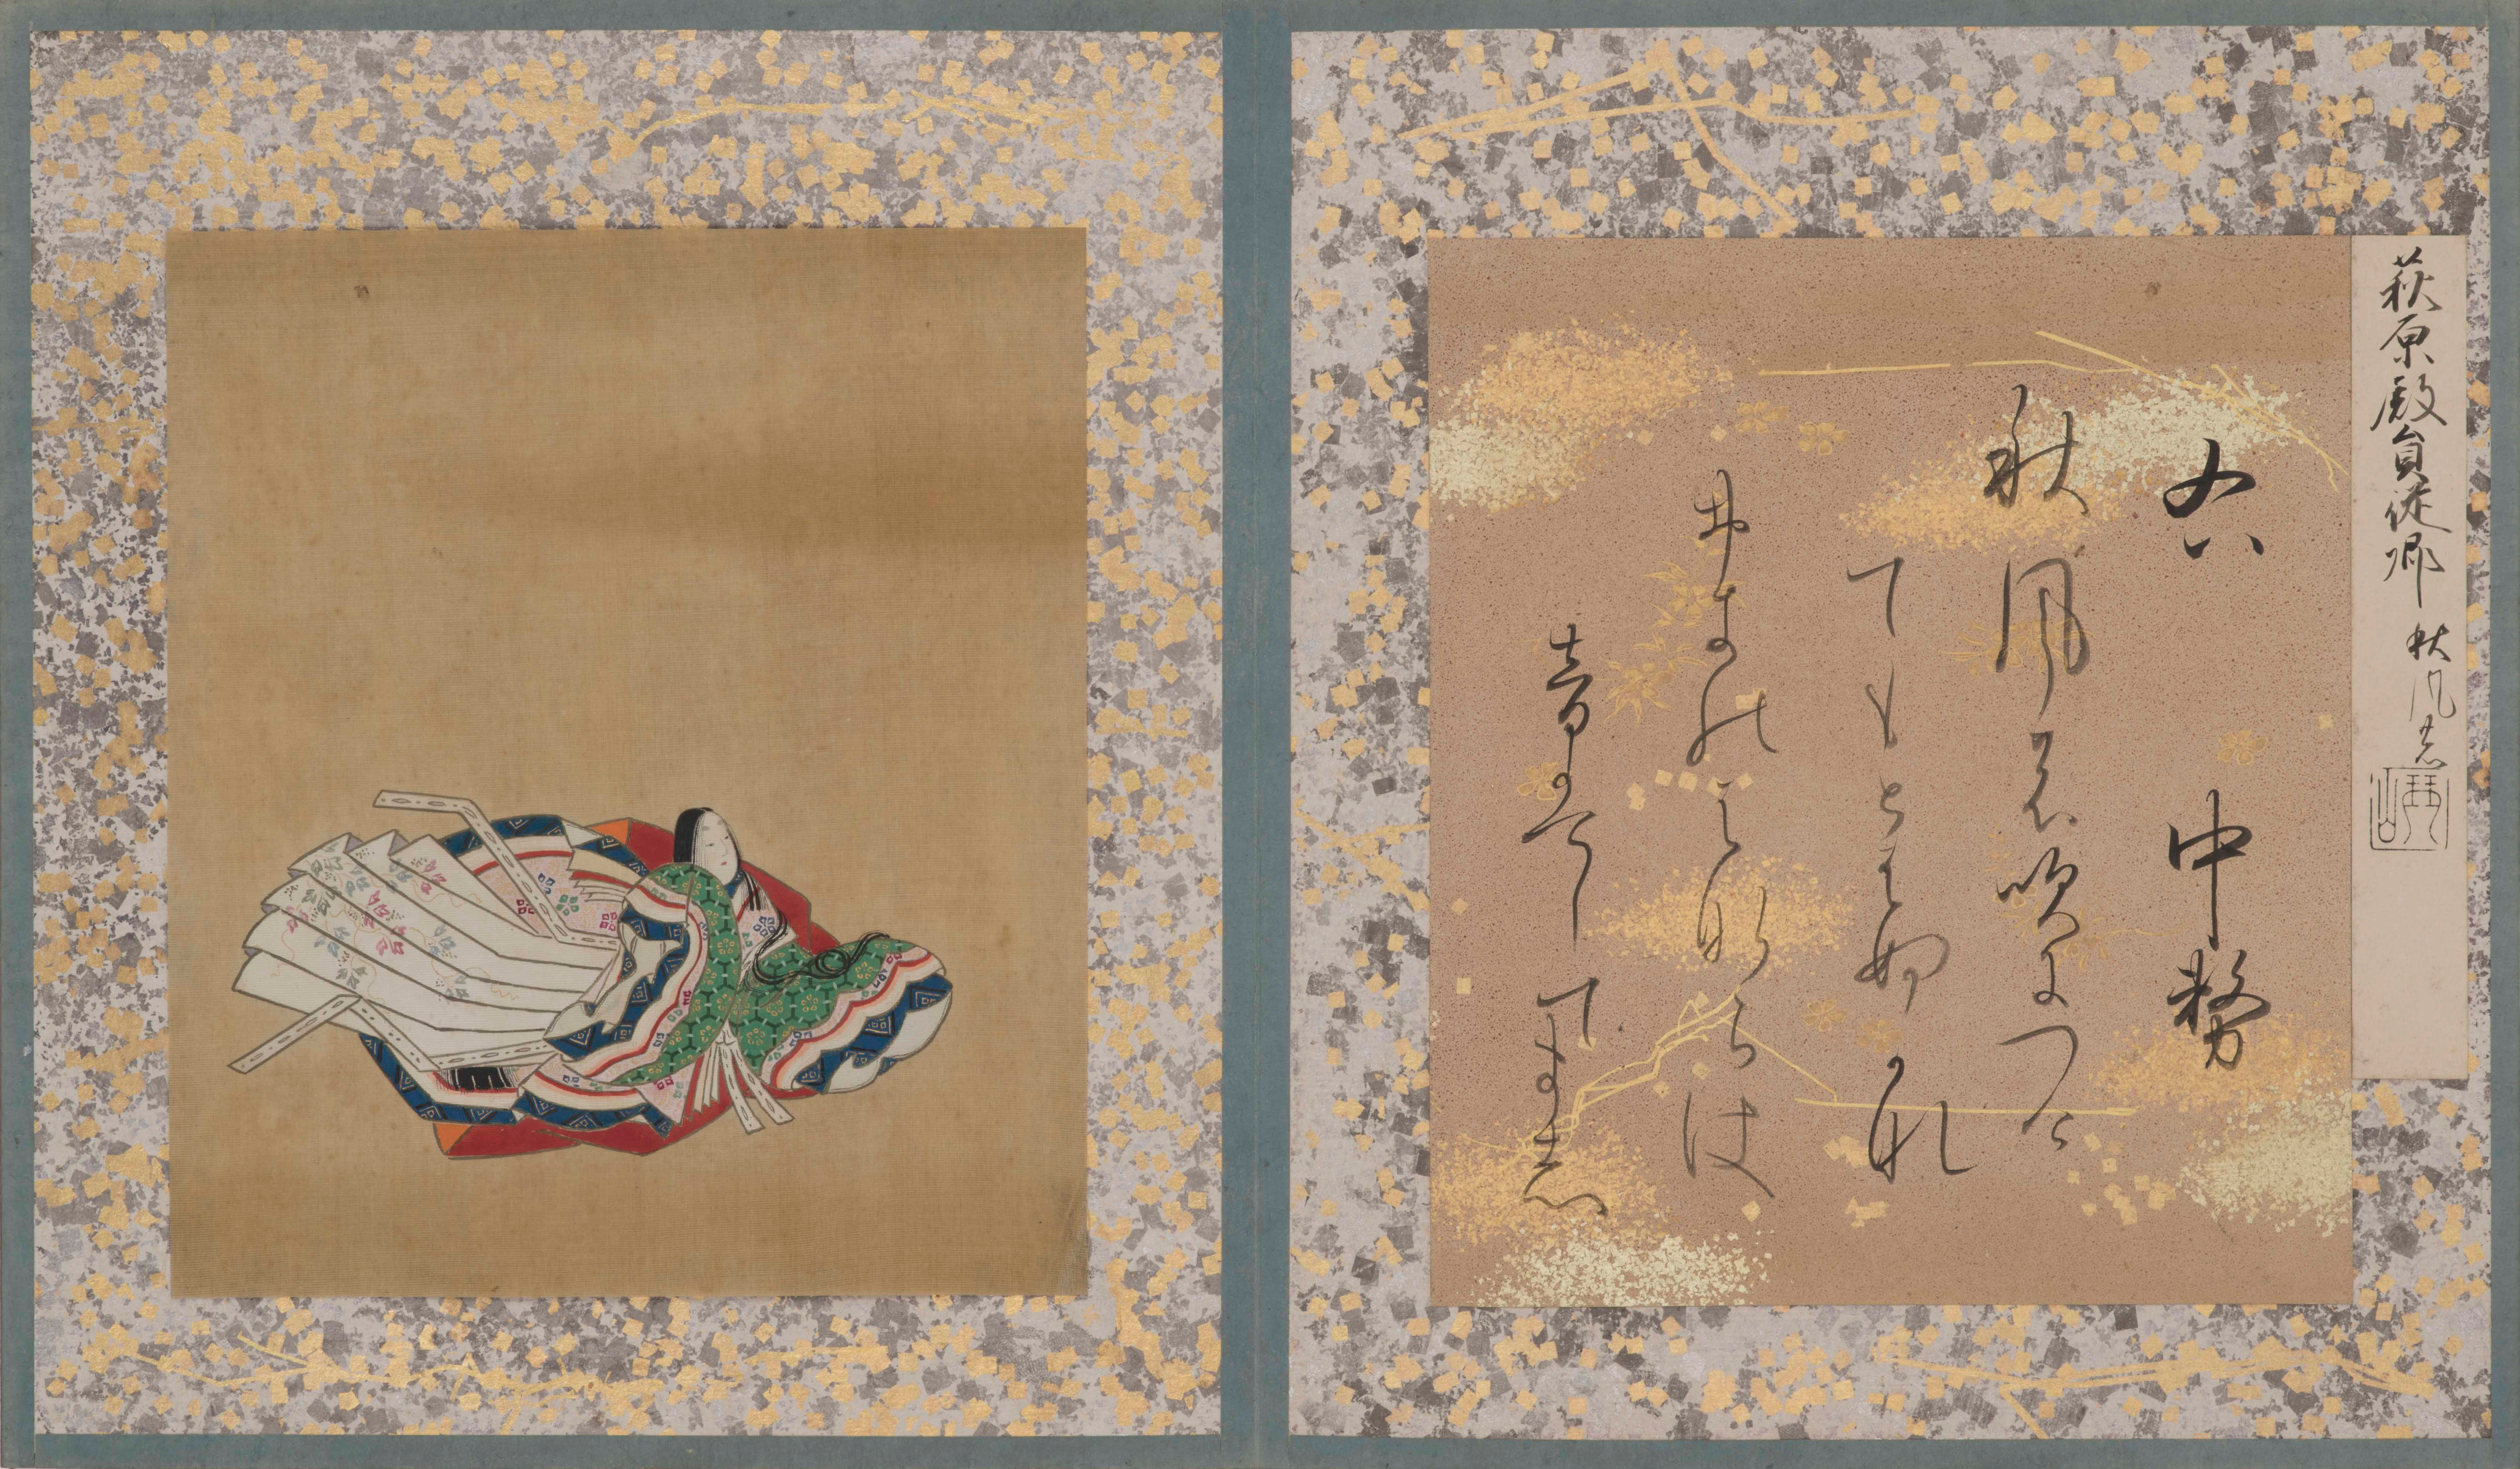 左に貴族女性の姿を描いた絵、右に和歌を記した色紙を貼り込んだアルバム